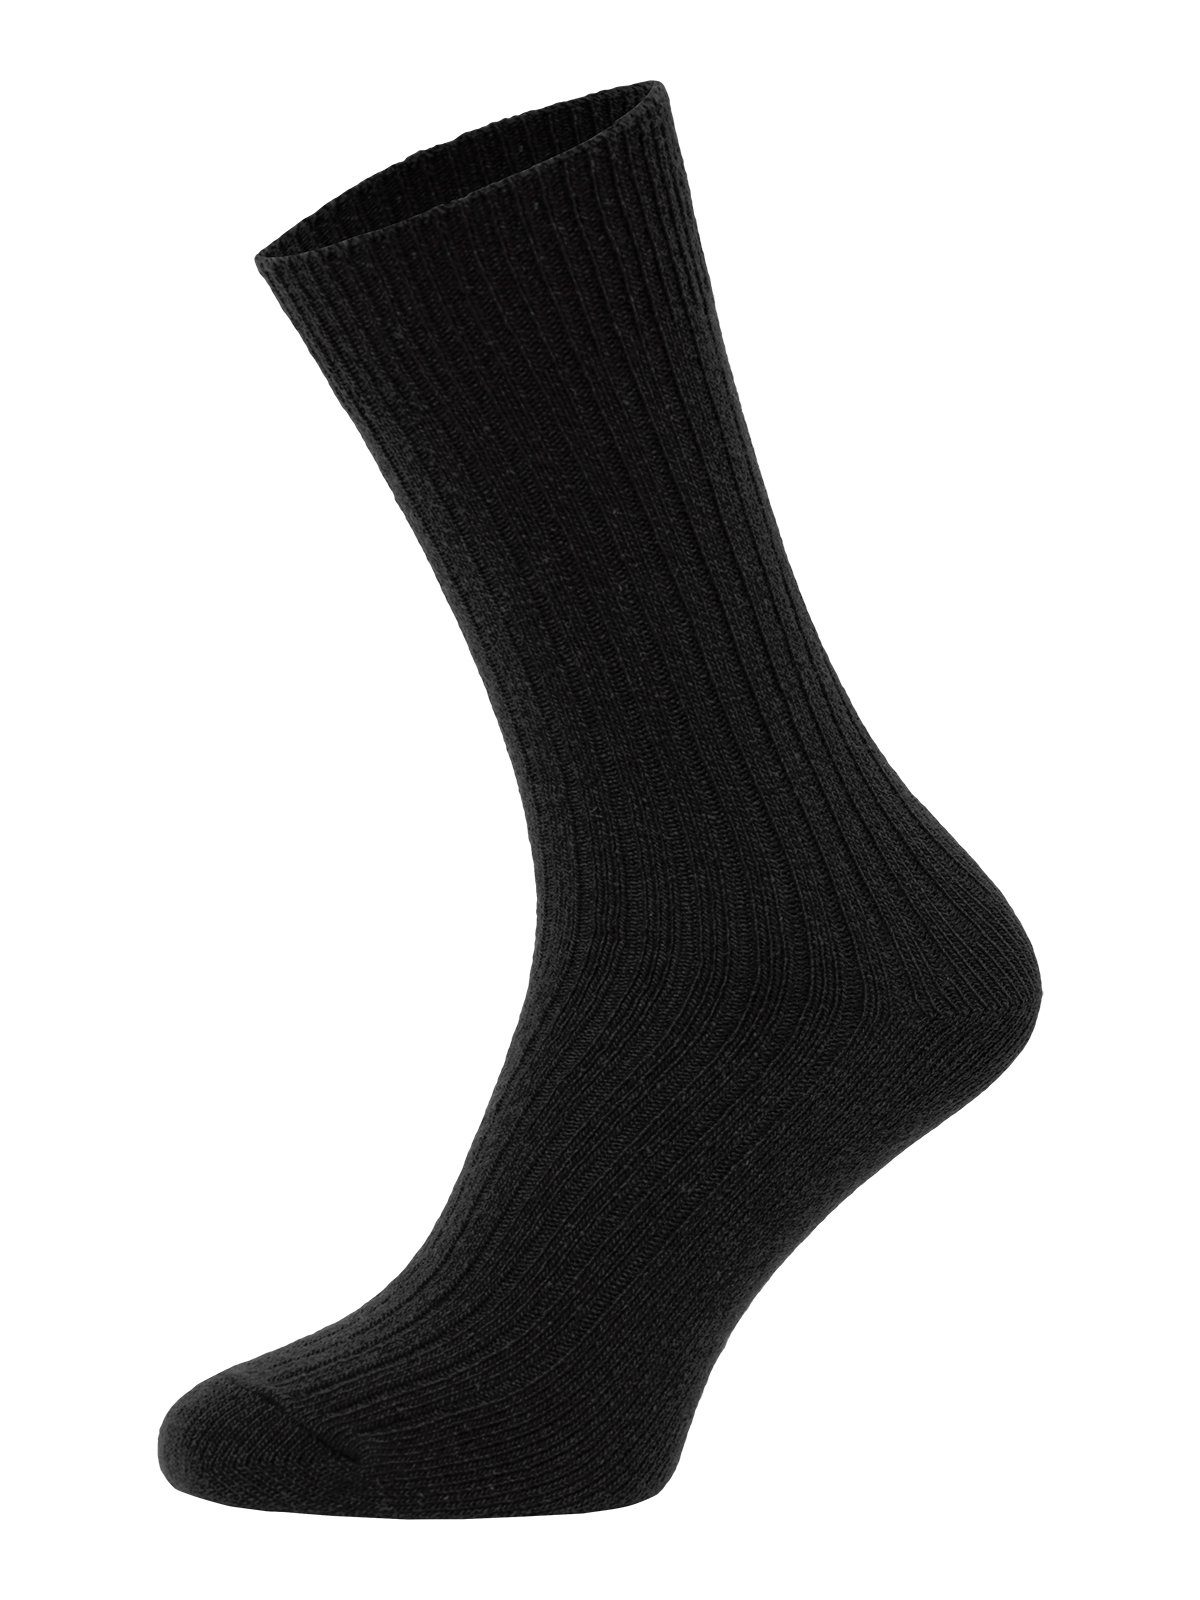 Socken Schwarz Uni mit Bunte Druckarm Wollsocken HomeOfSocks Dünne Bunt Wollanteil Hochwertige 72% Dünn Wollsocken